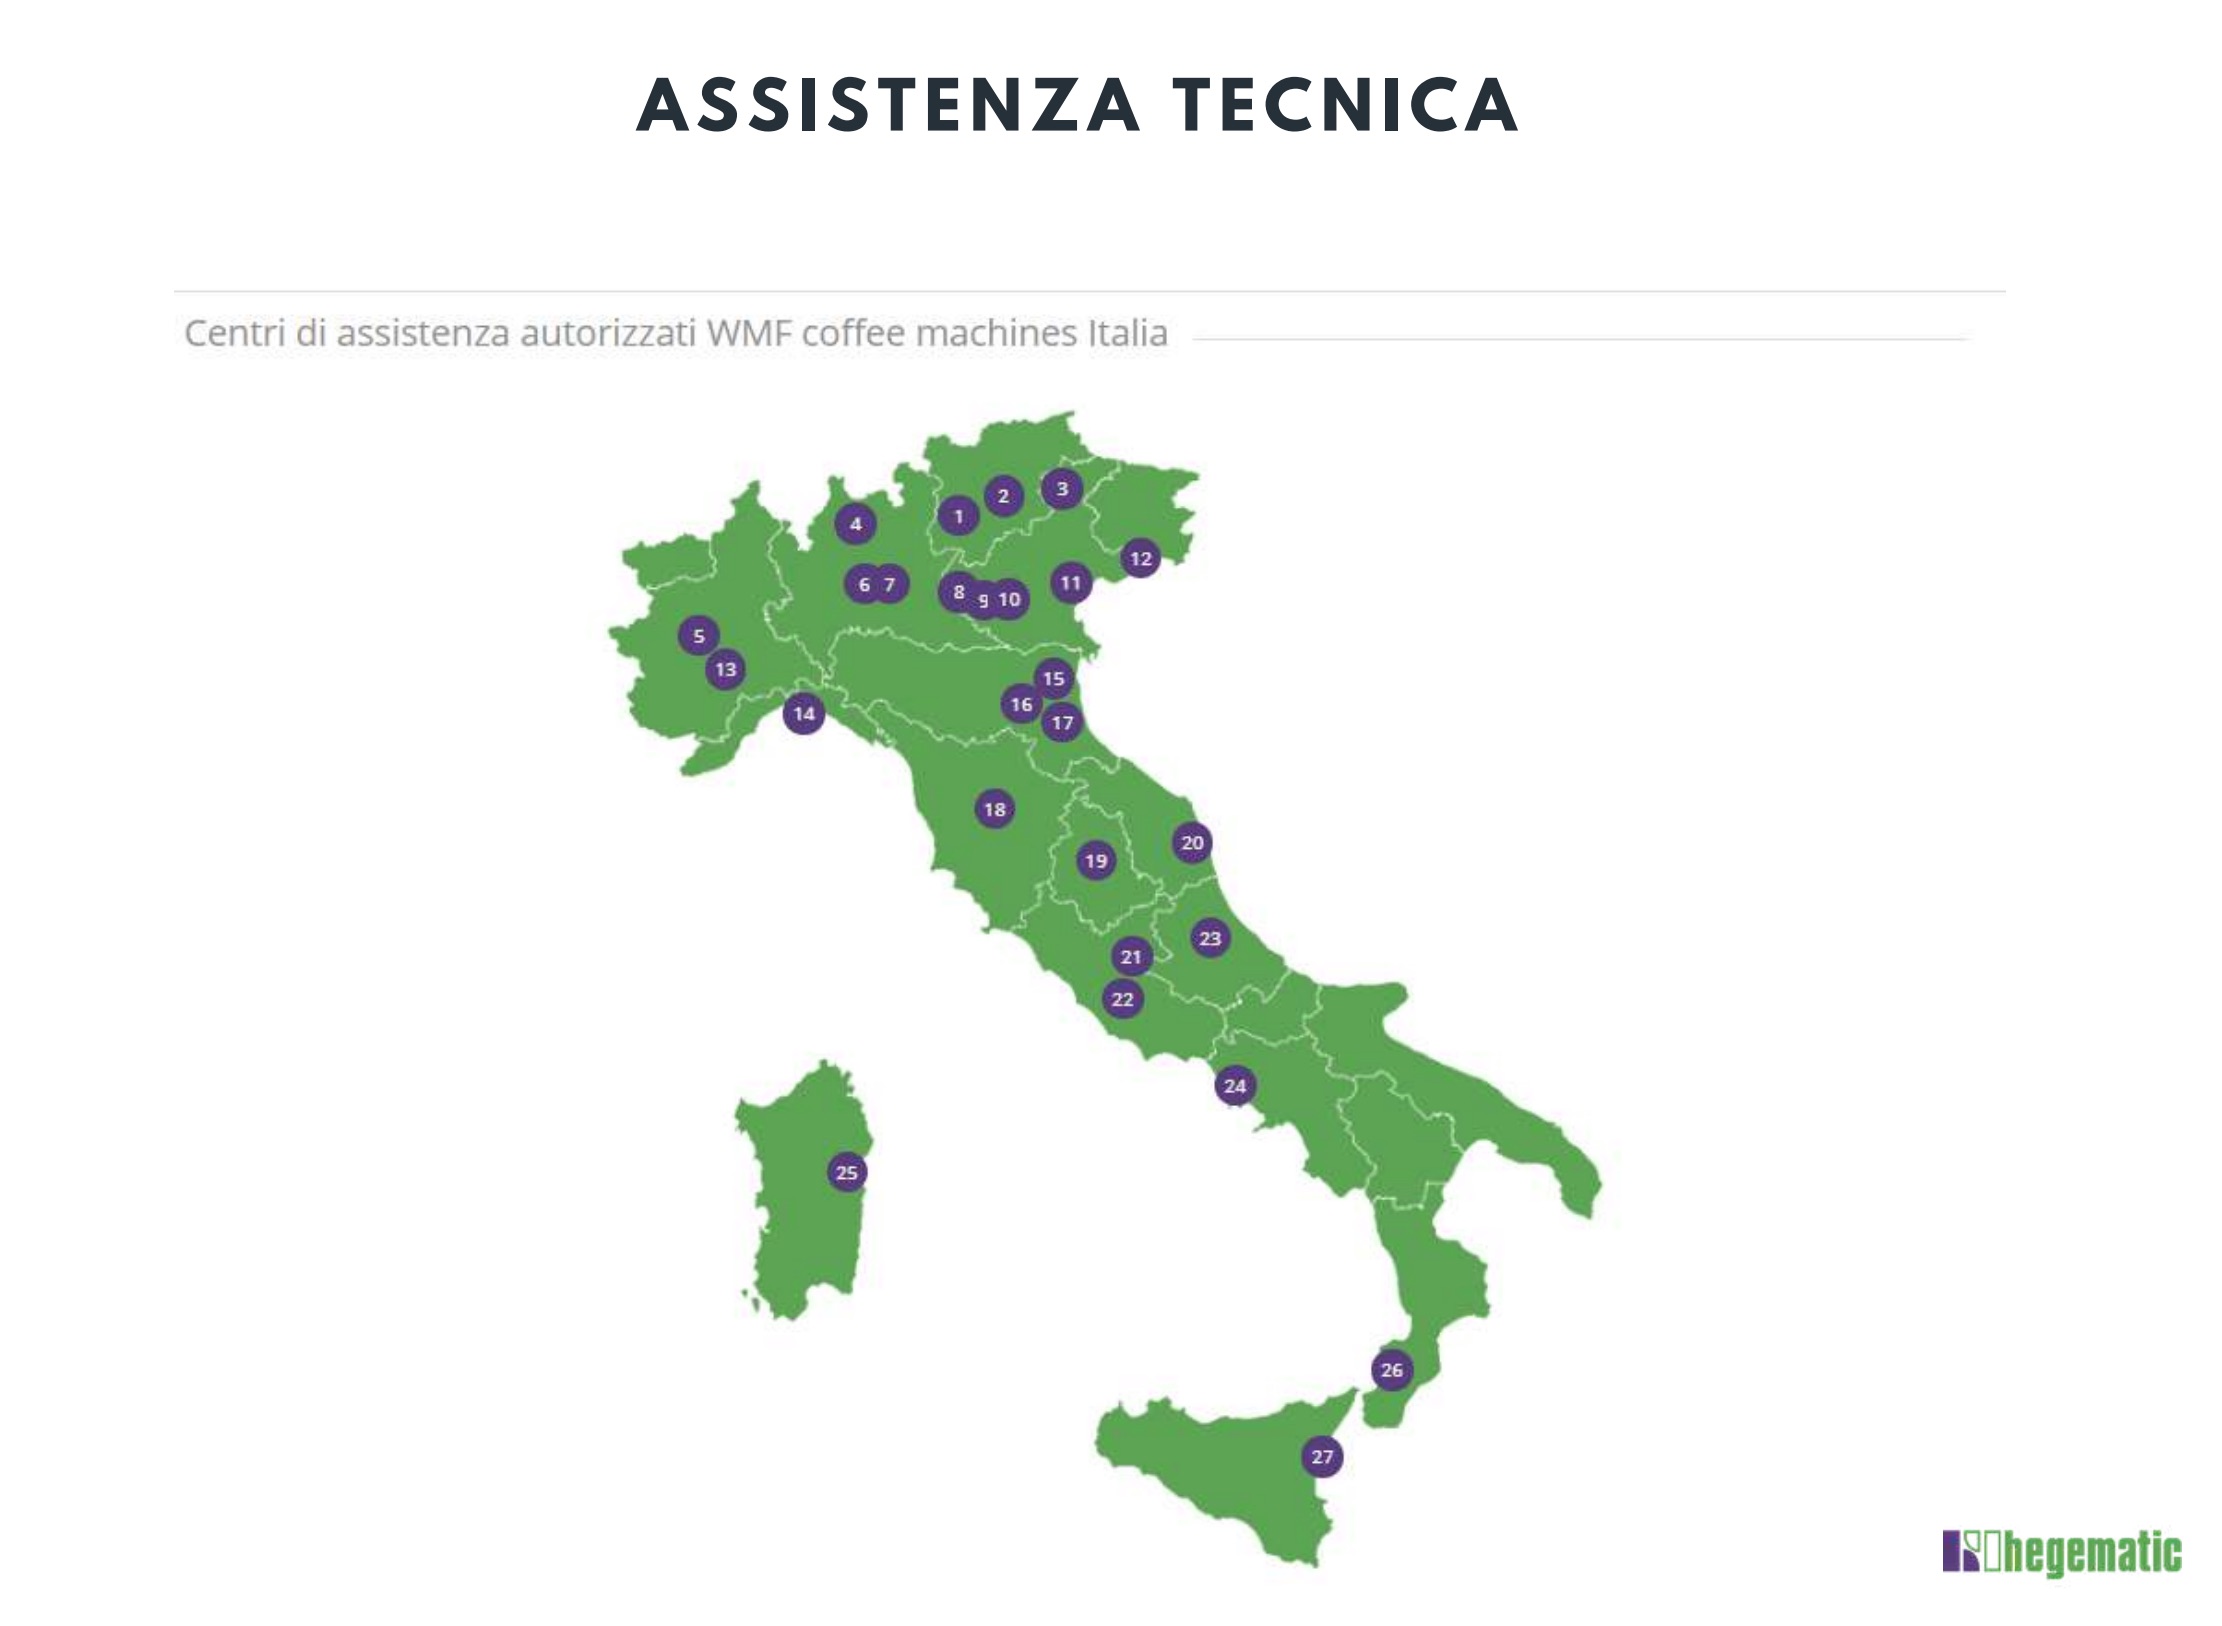 La rete di assistenza tecnica capillare in Italia